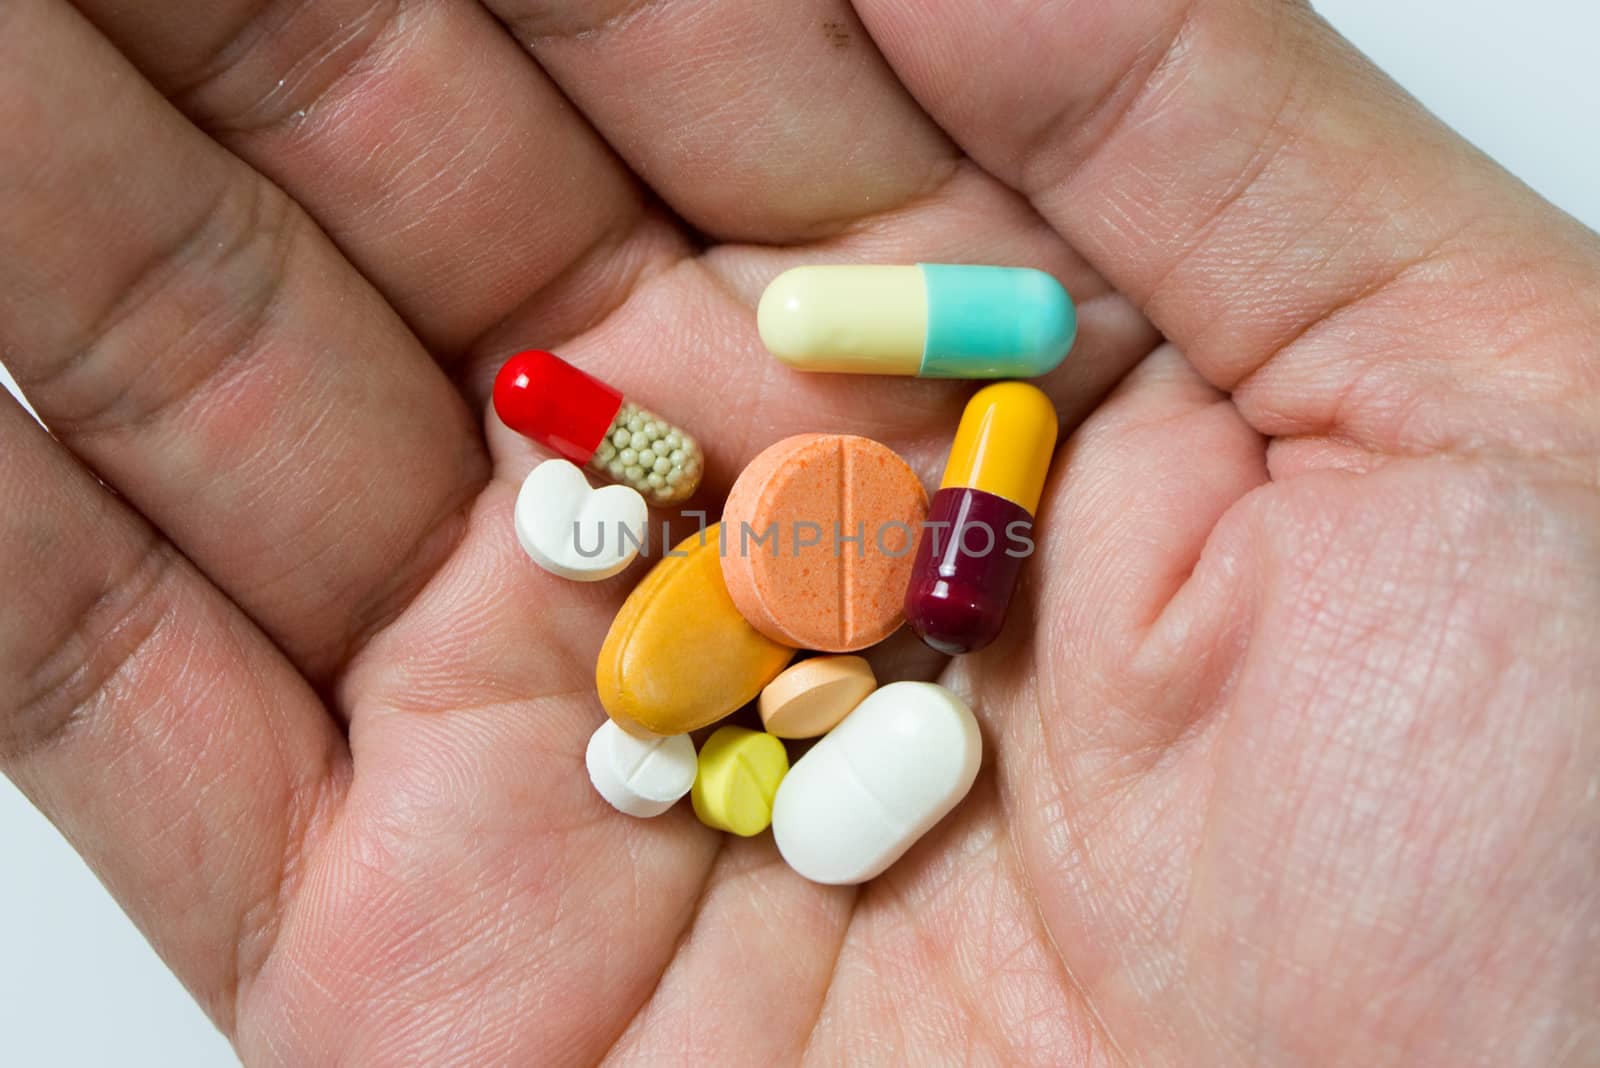 Hand full of pills by Kenishirotie